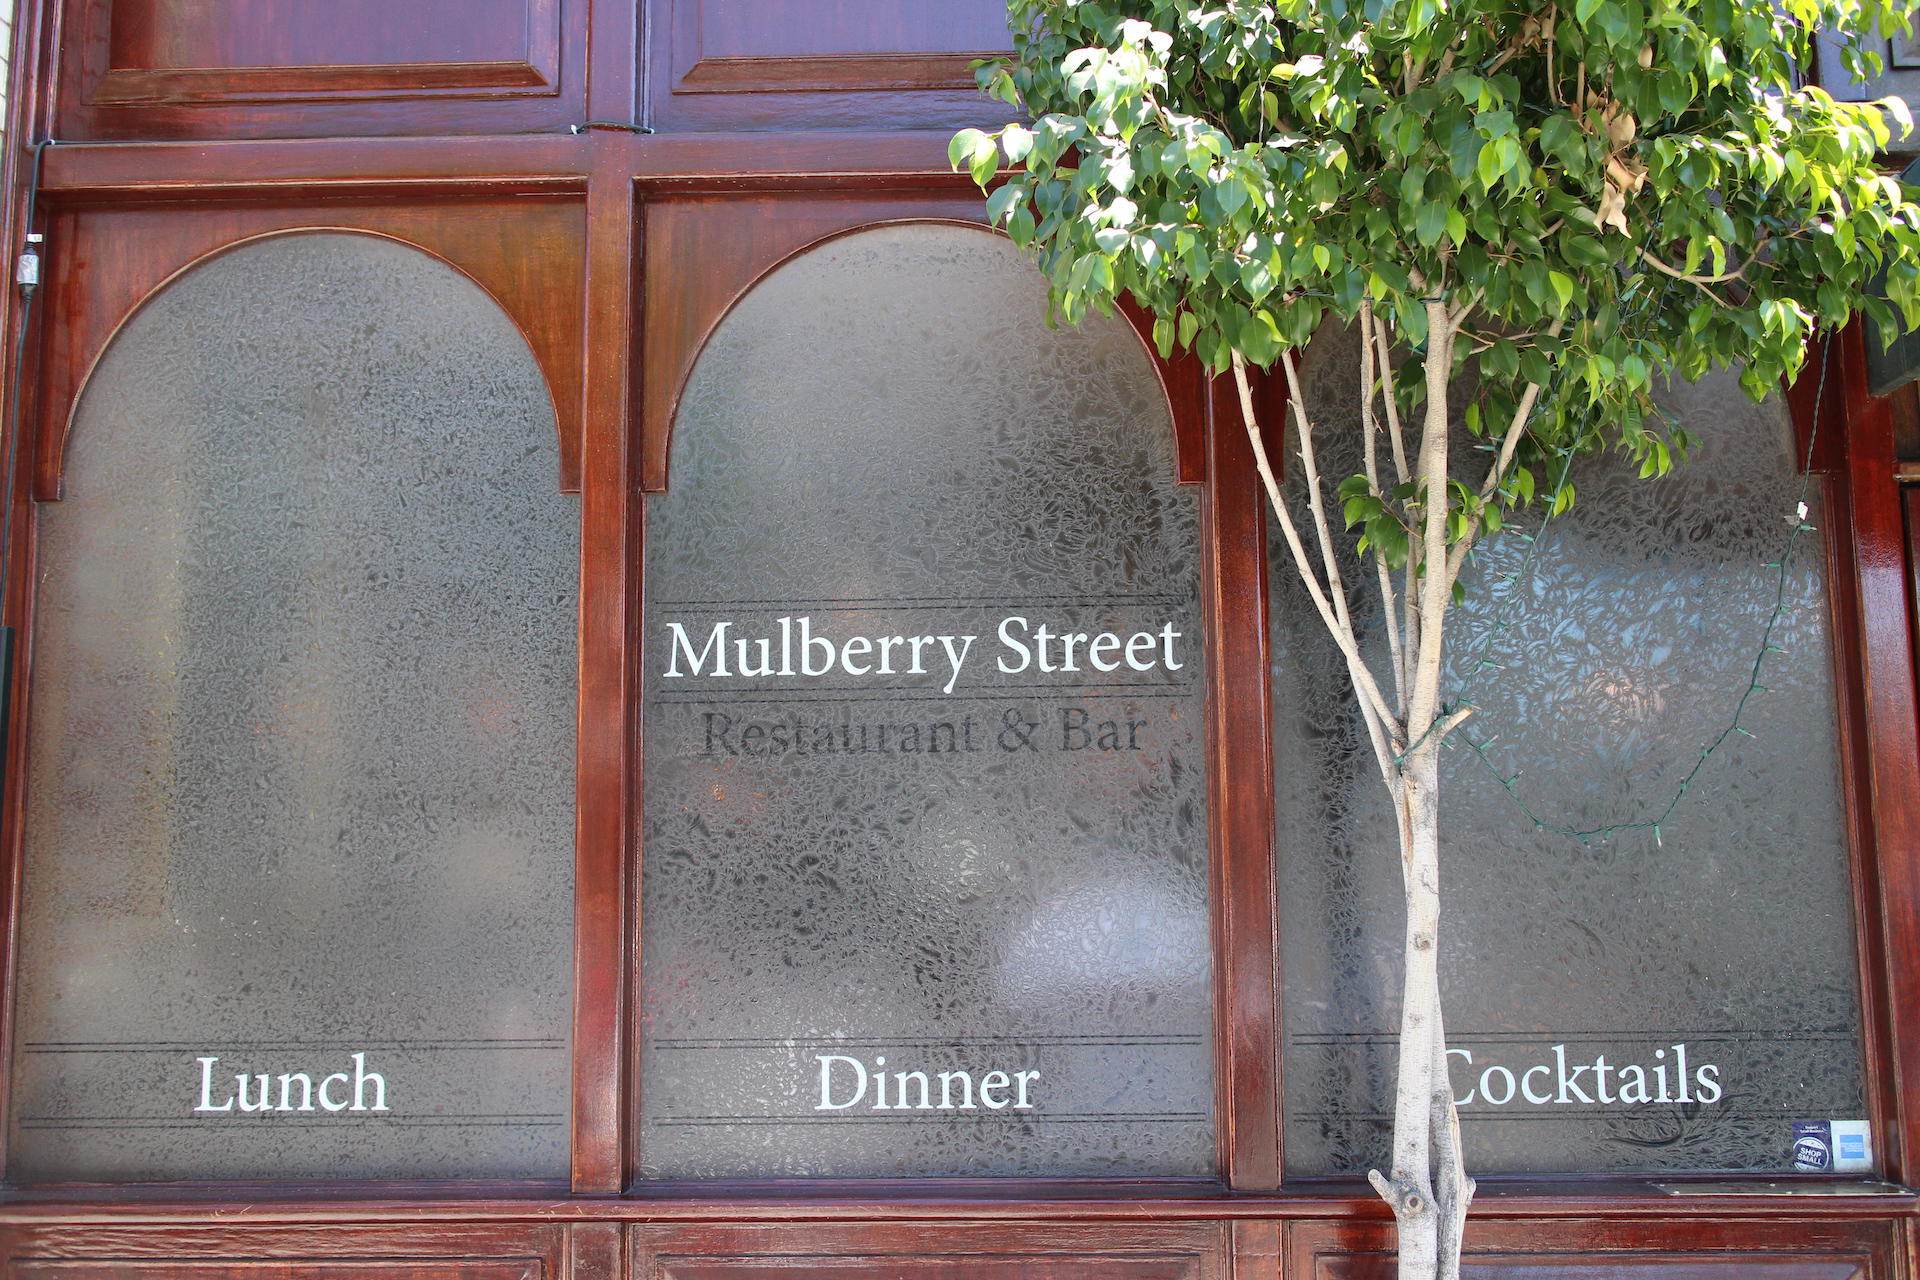 Mulberry St. Ristorante Photo